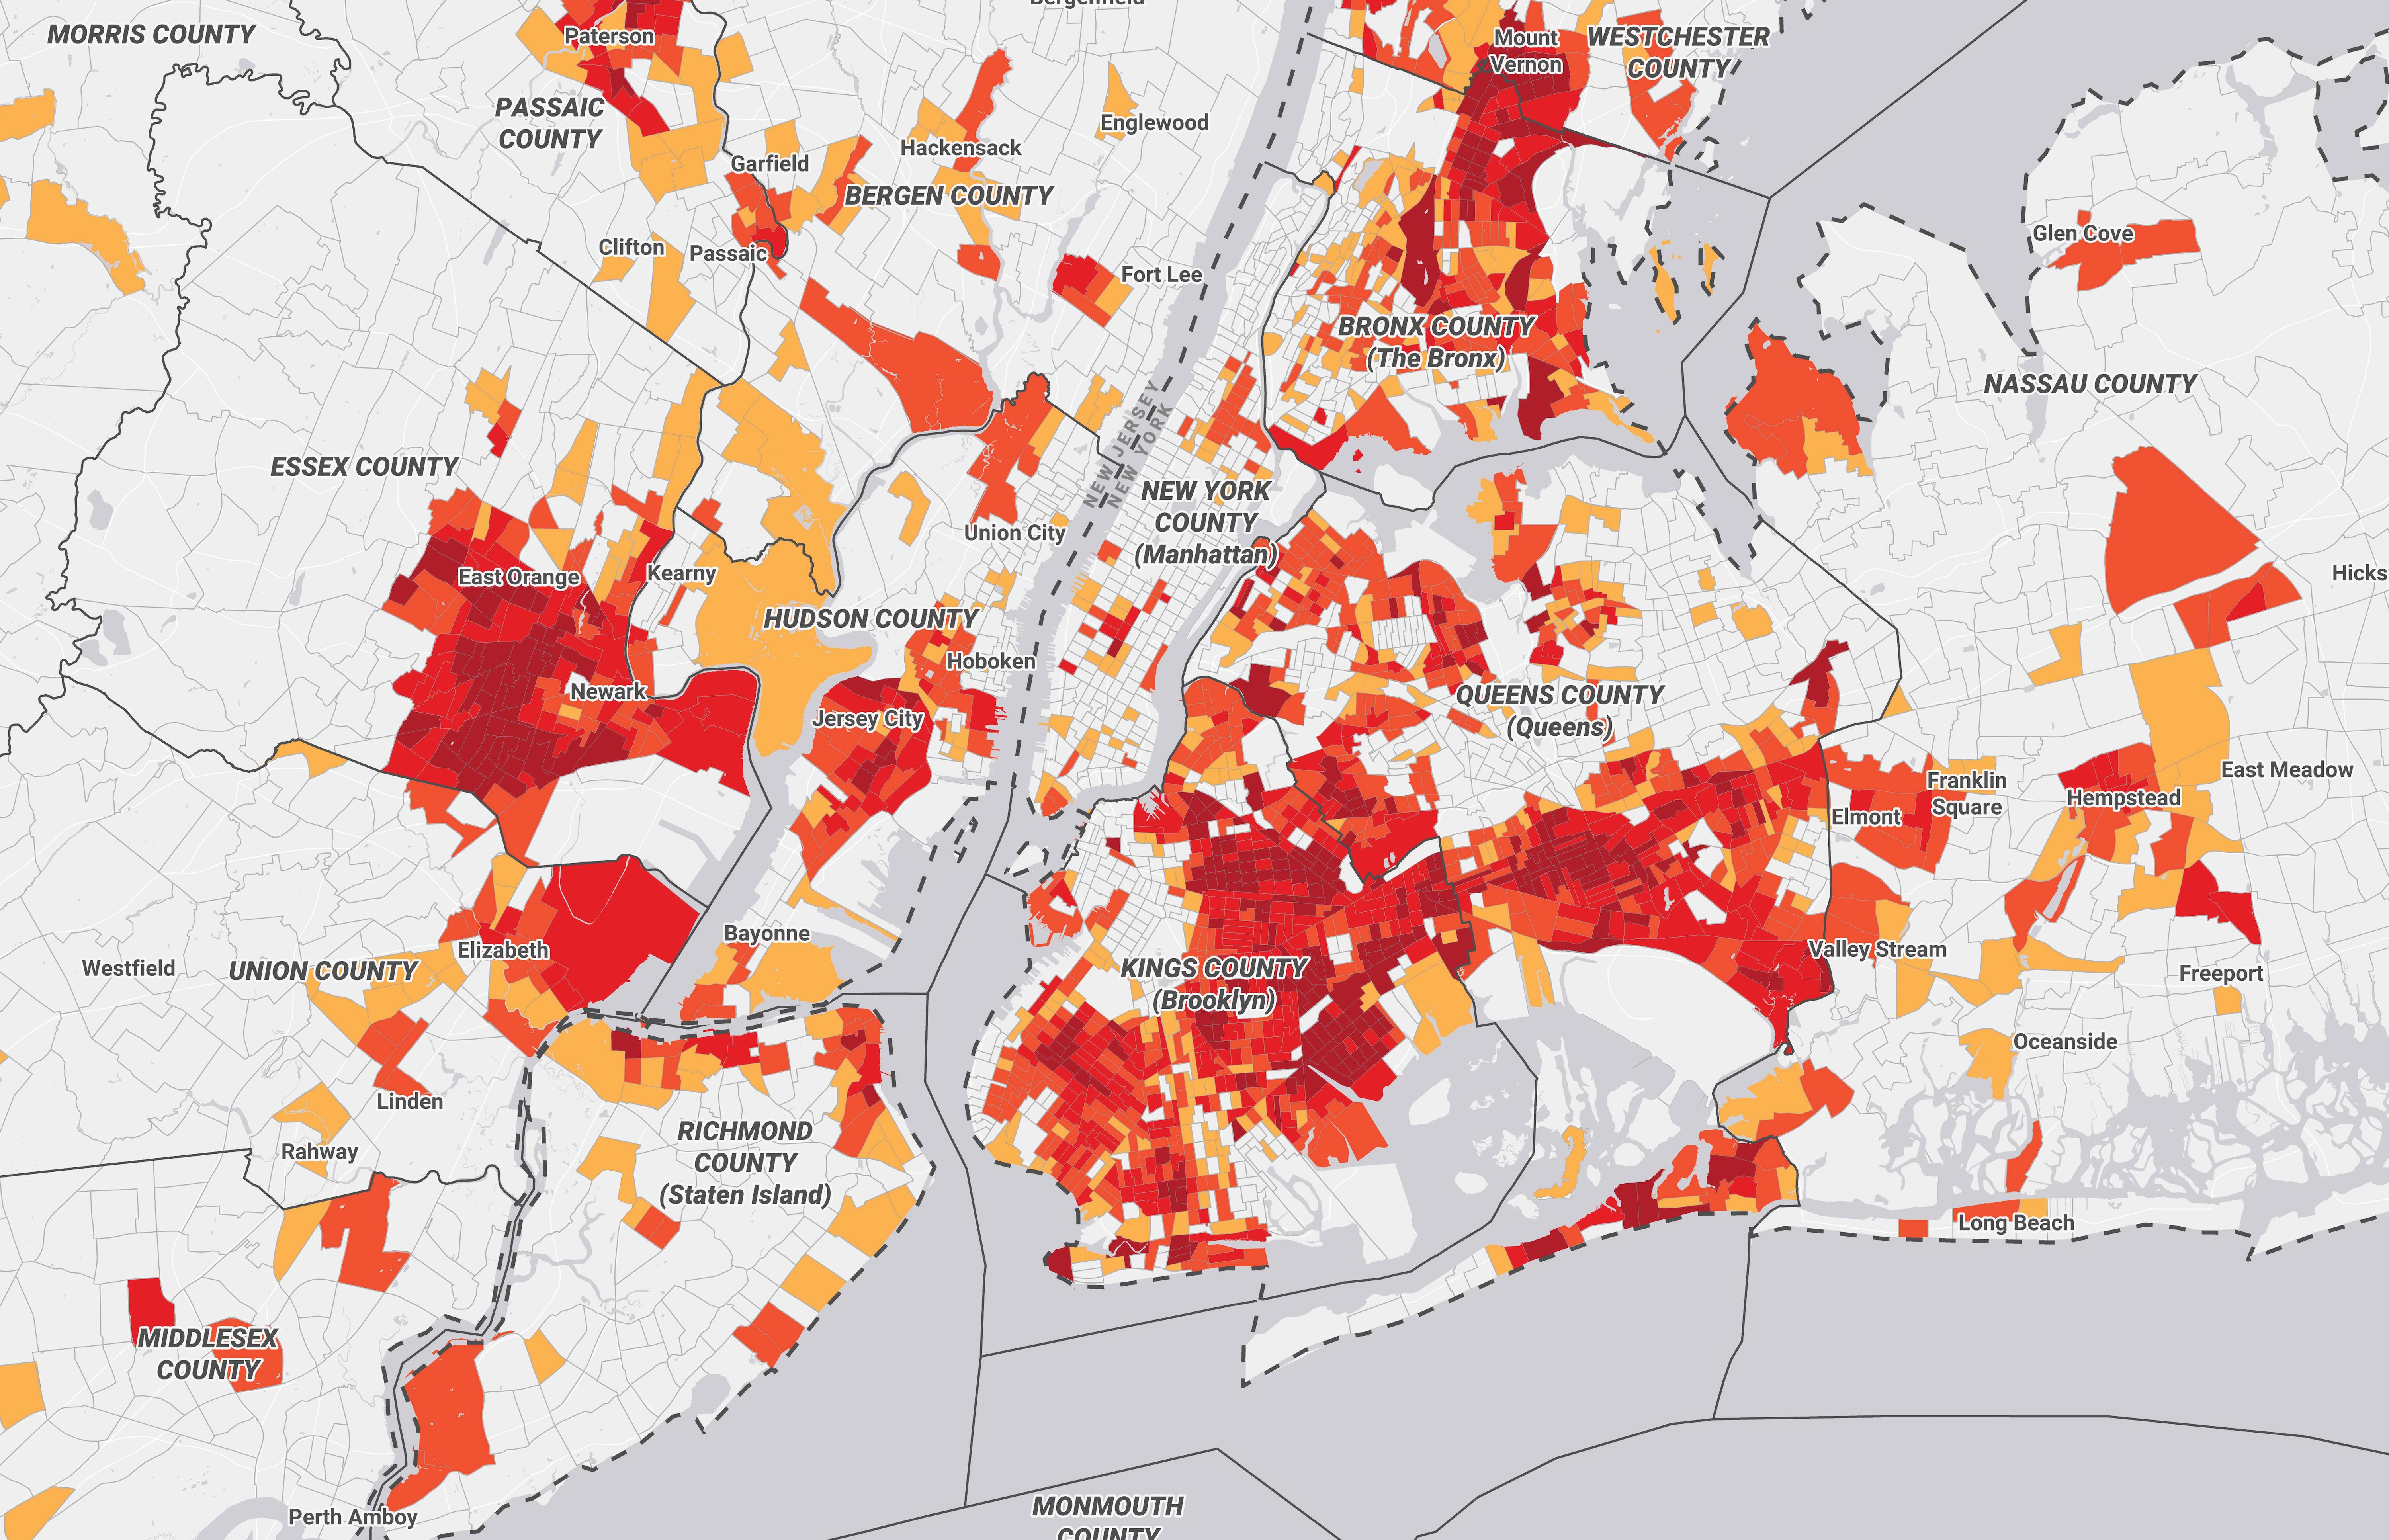 Mapa da área metropolitana da cidade de Nova York com risco de subconta, 2019